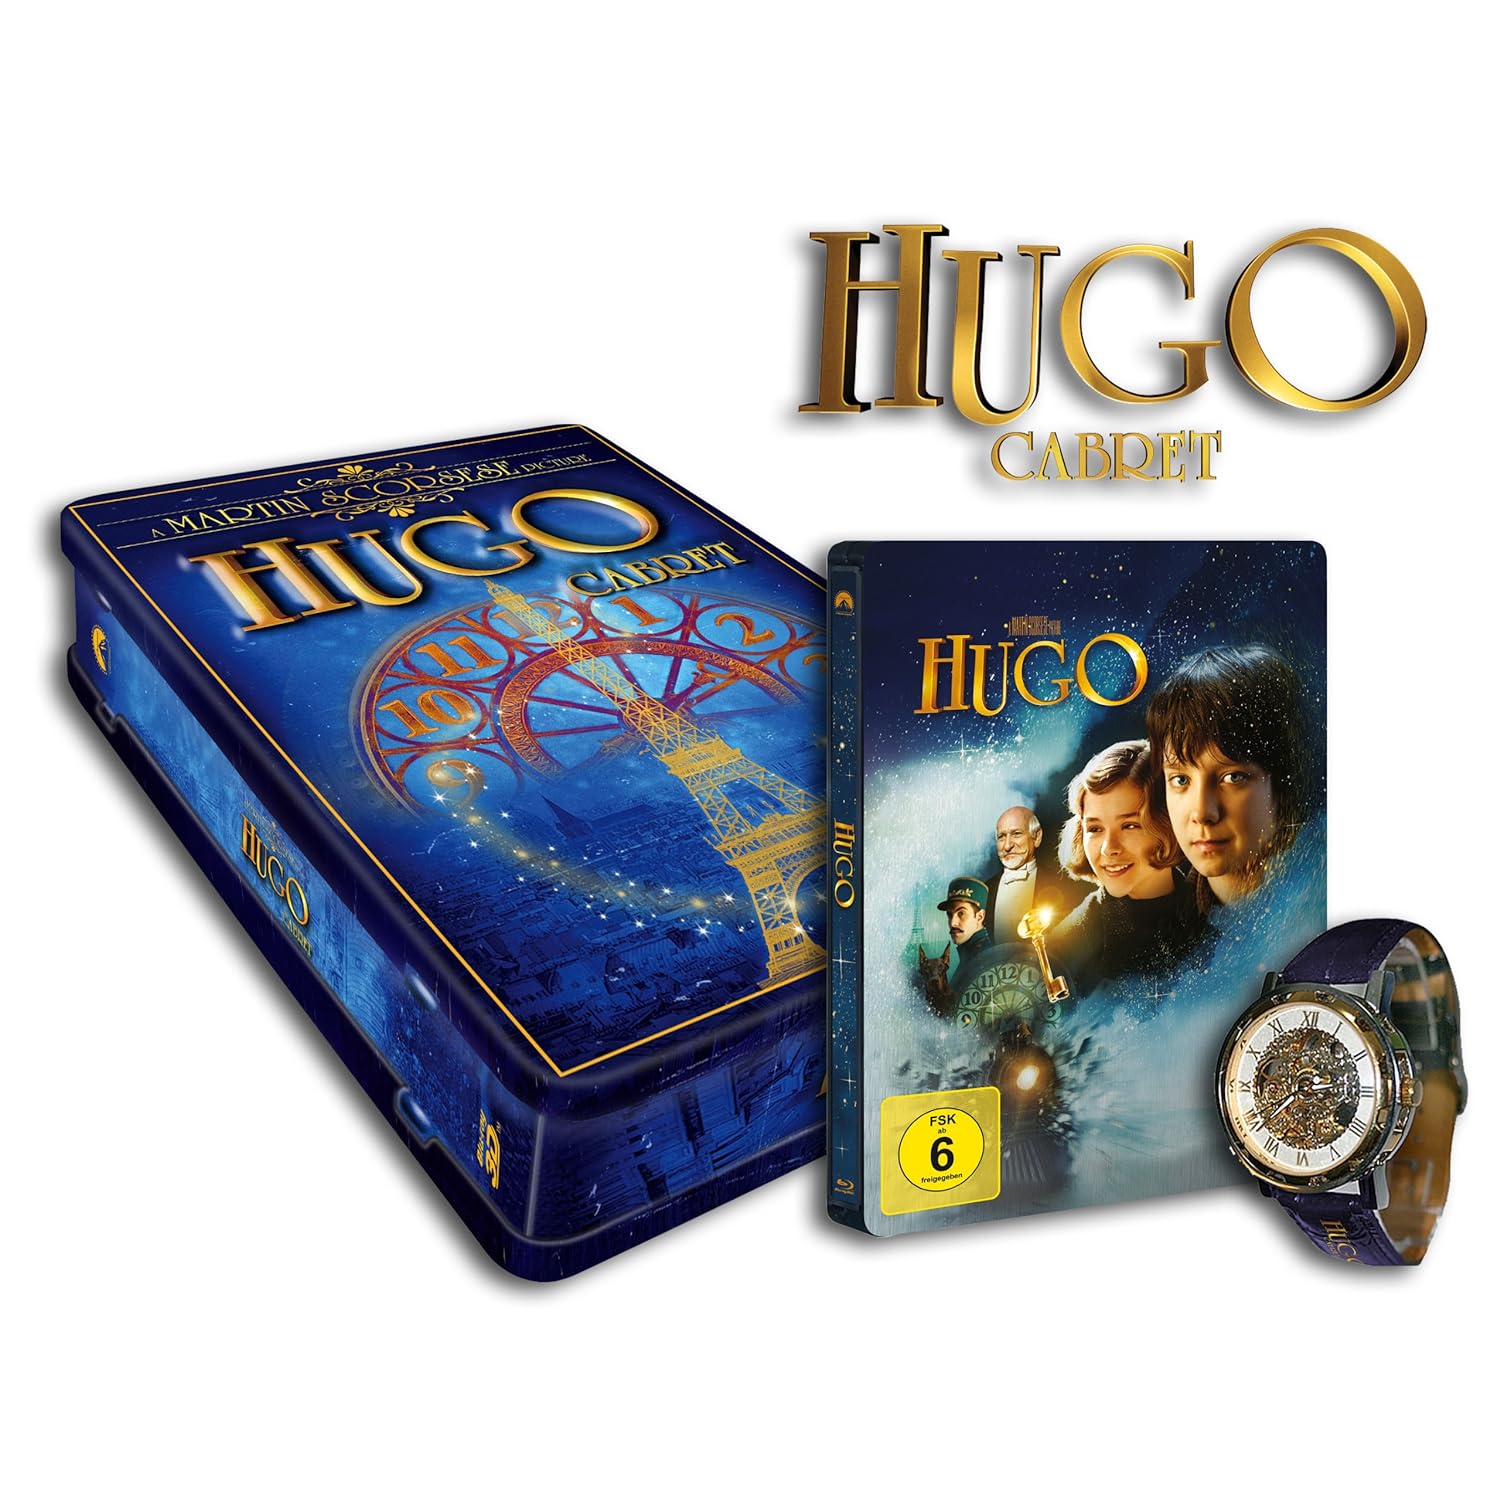 Hugo 3d. Hugo Cabret. The Art of Flight 3d Blu-ray. Hugo 3